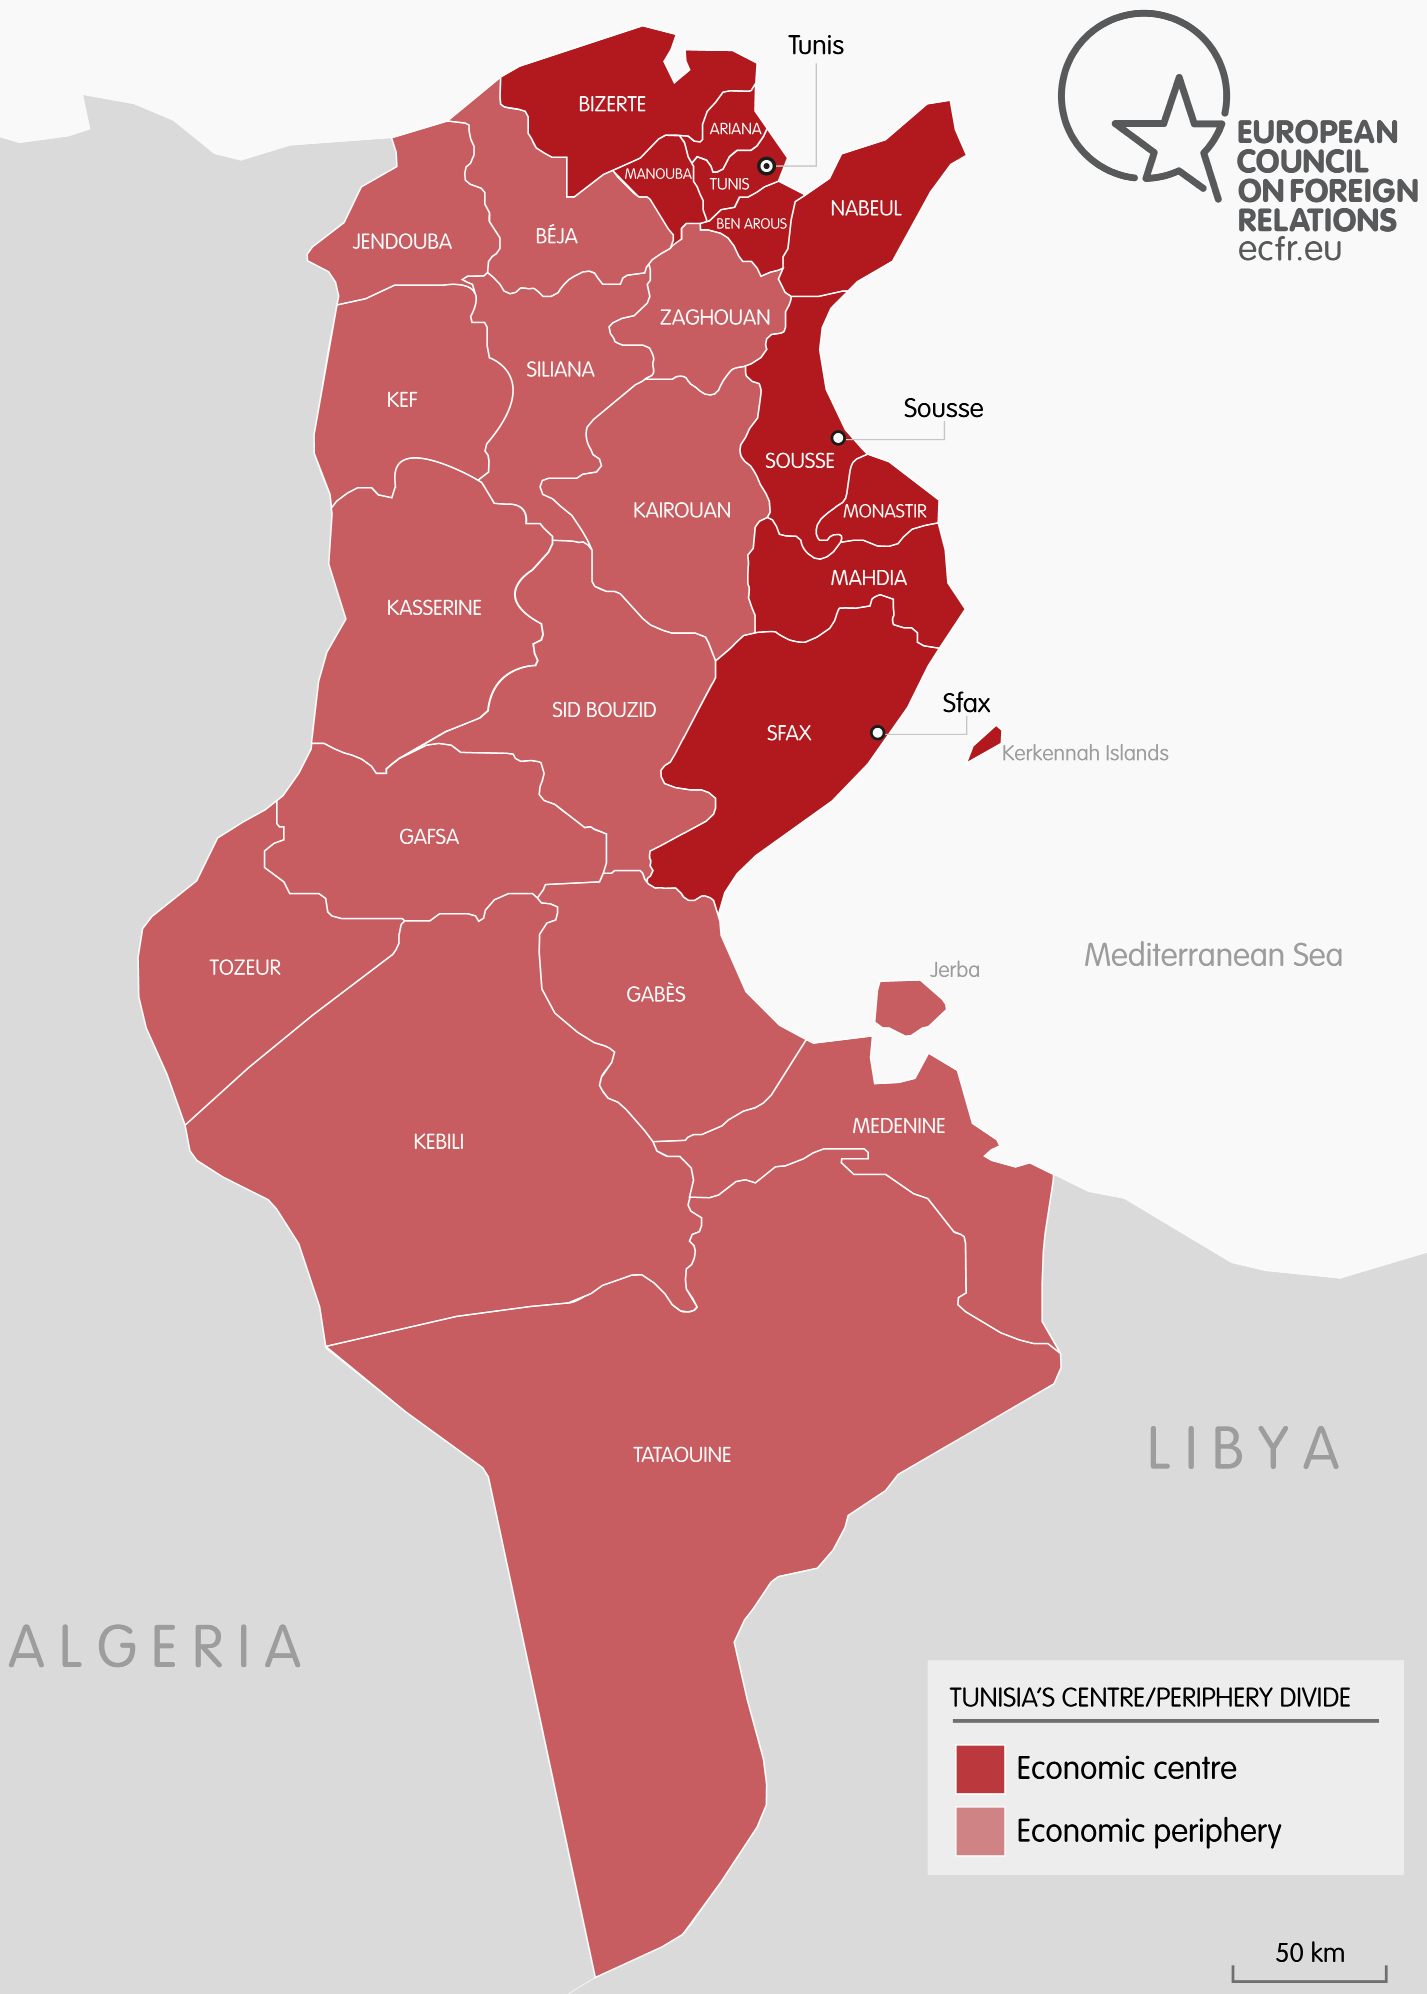 Tunisia’s centre/periphery divide